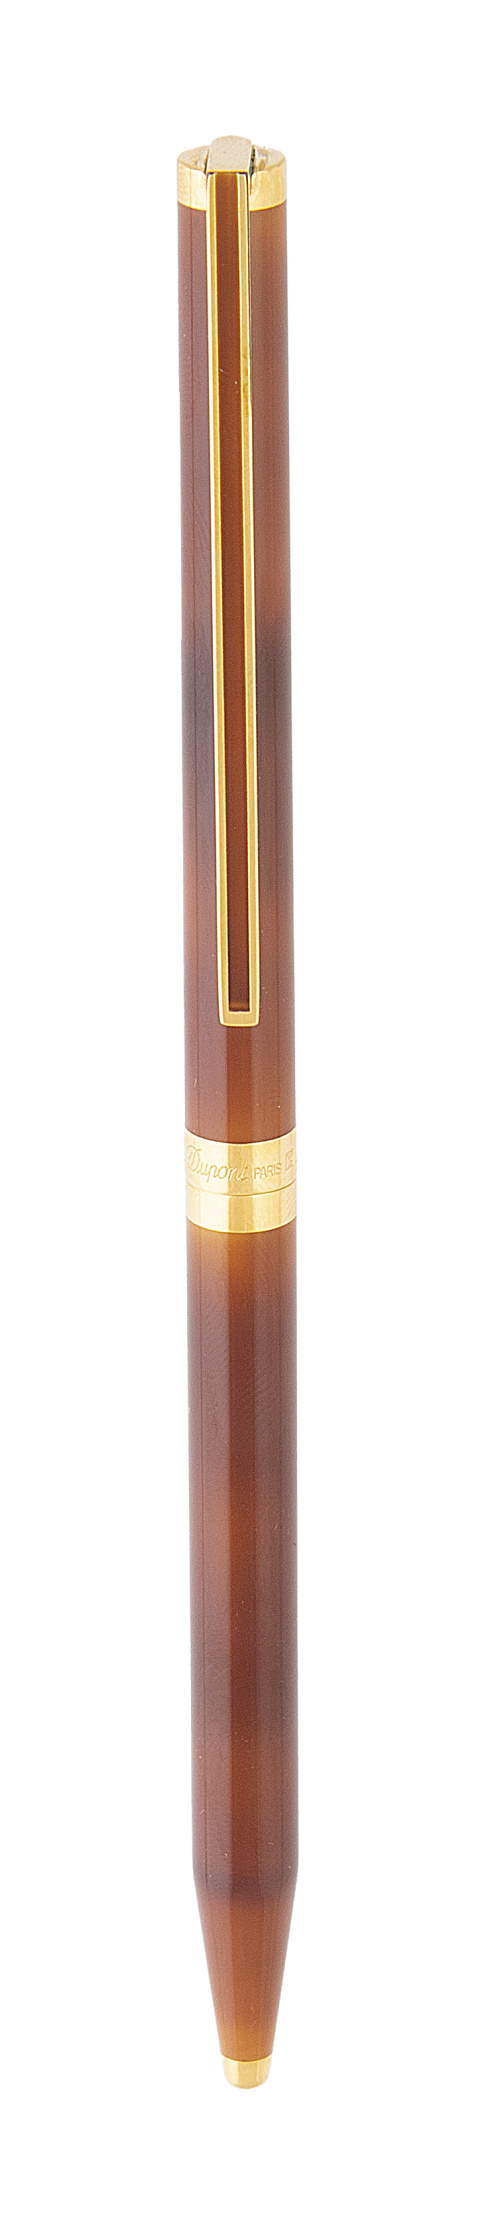 Bolígrafo Dupont Noblesse lacado en color marrón. 9FH58